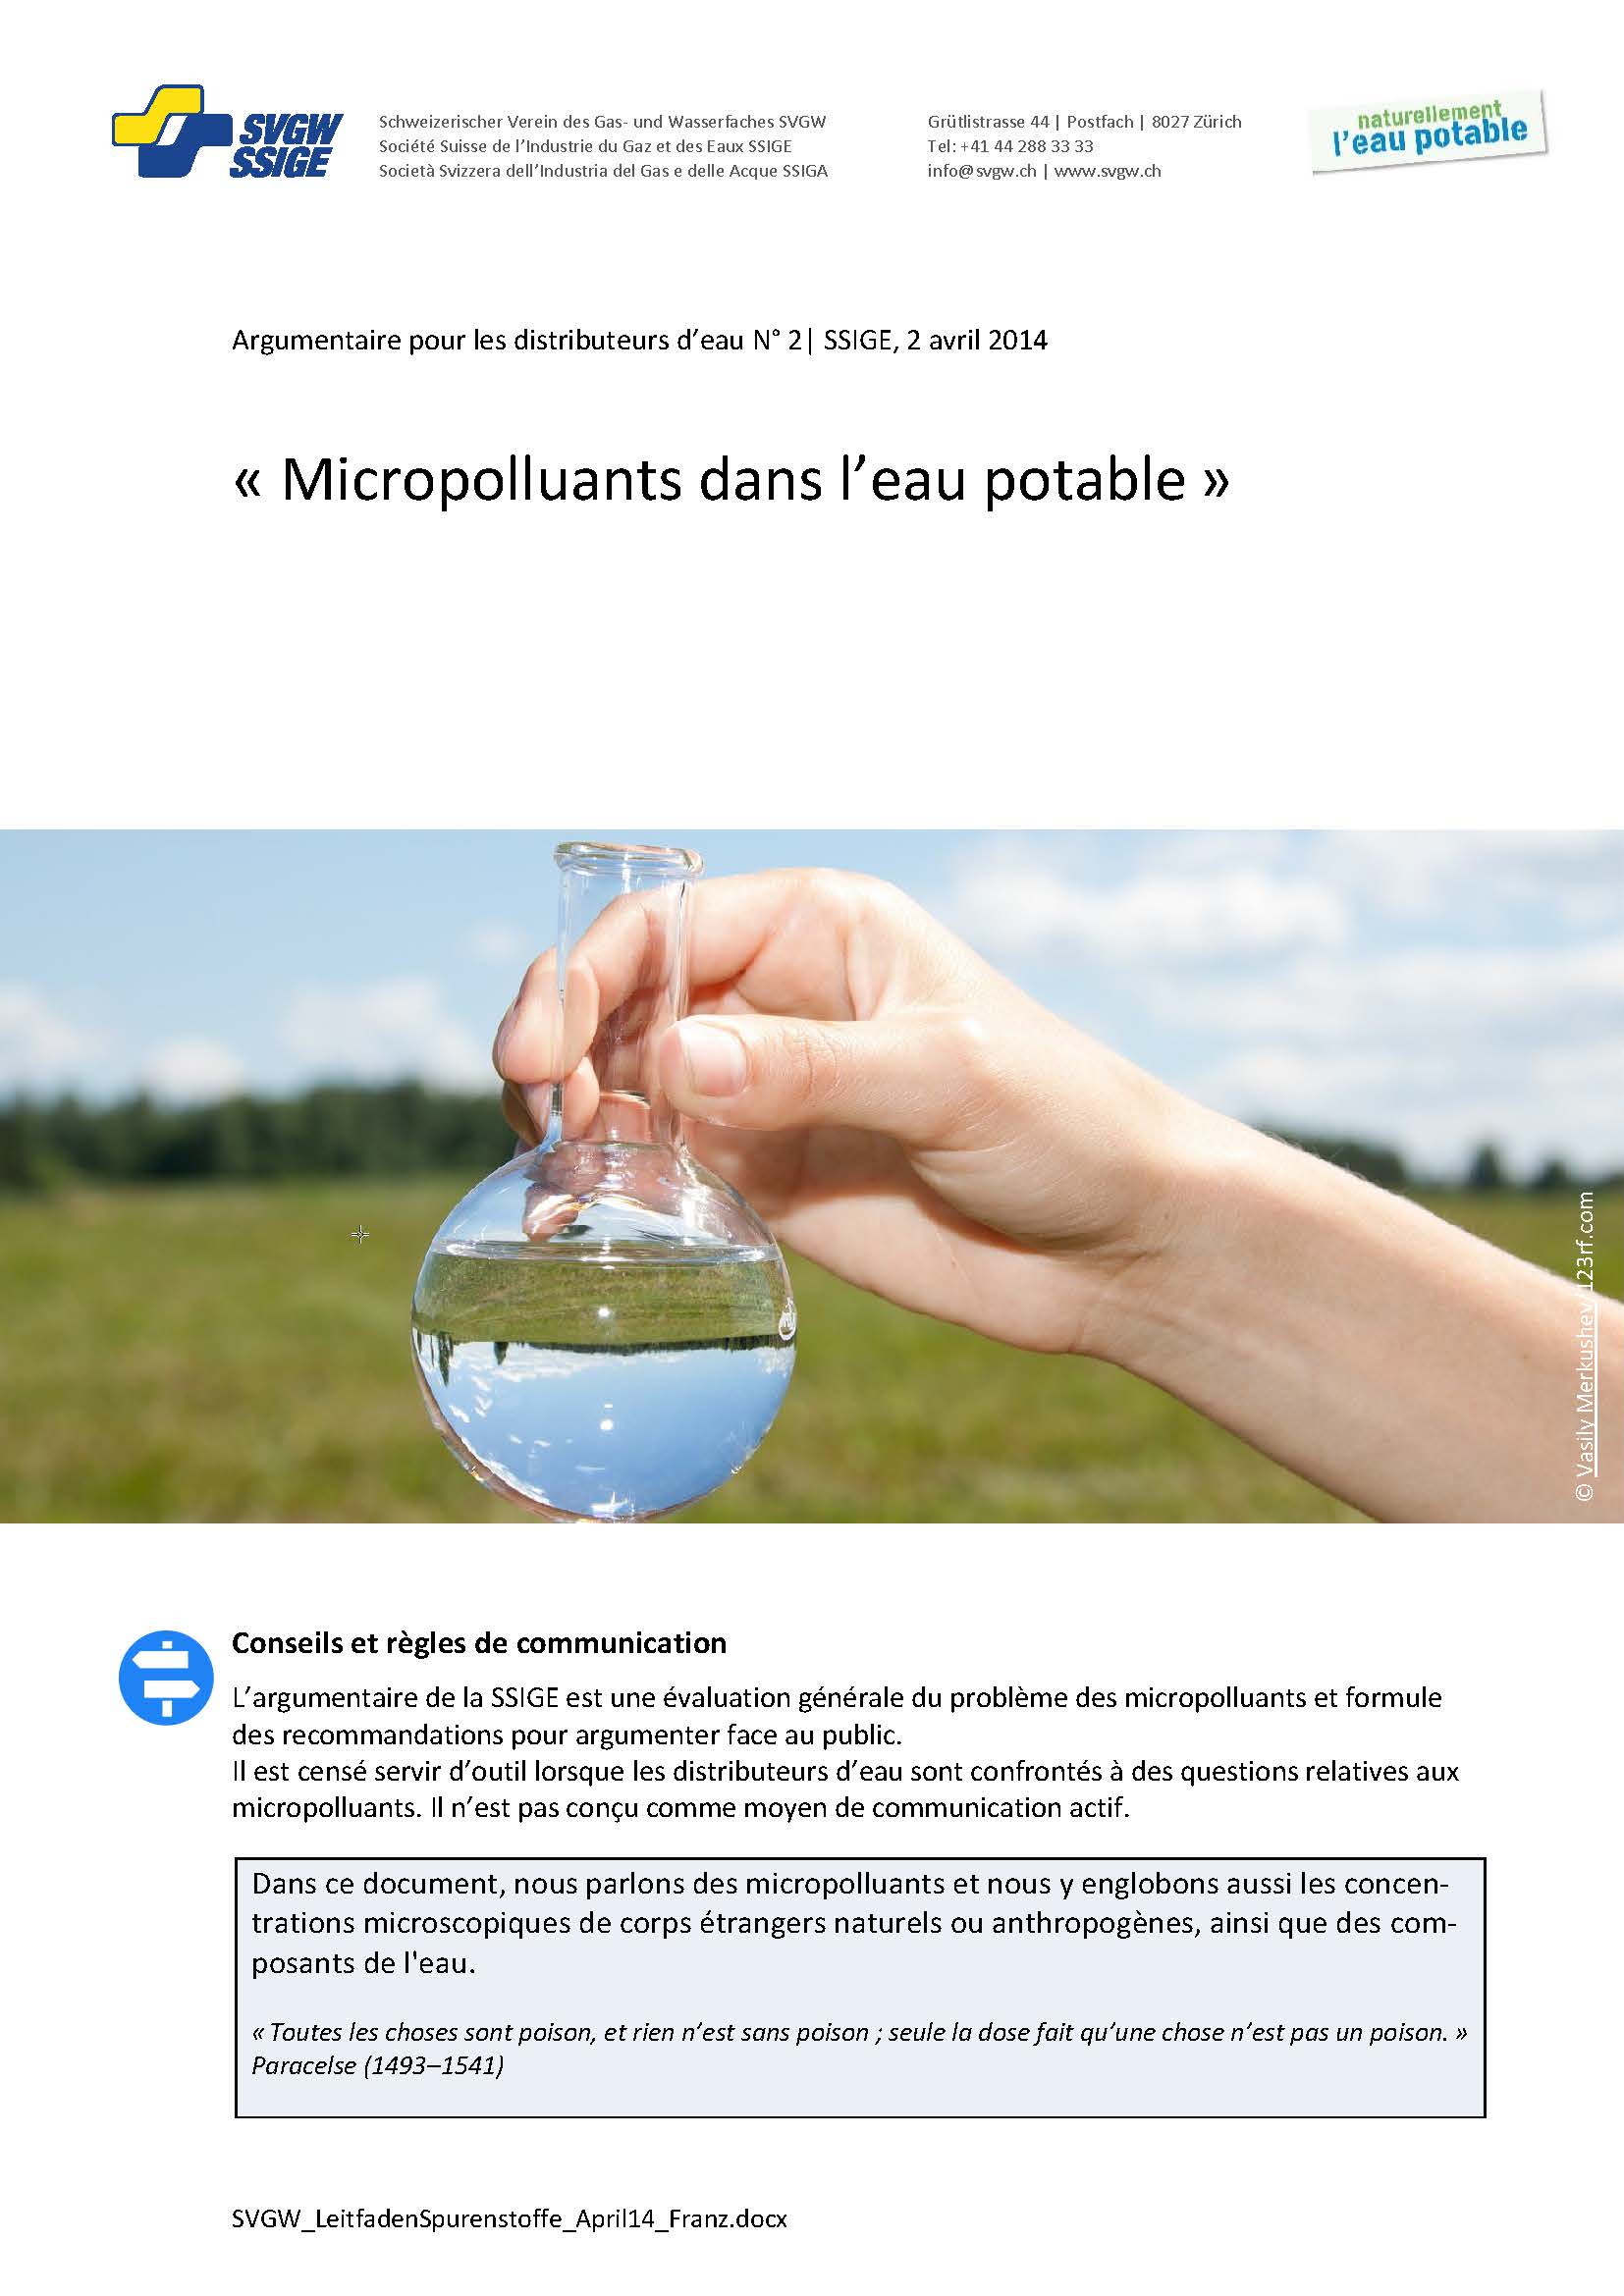 Argumentaire: «Micropolluants dans l'eau potable»